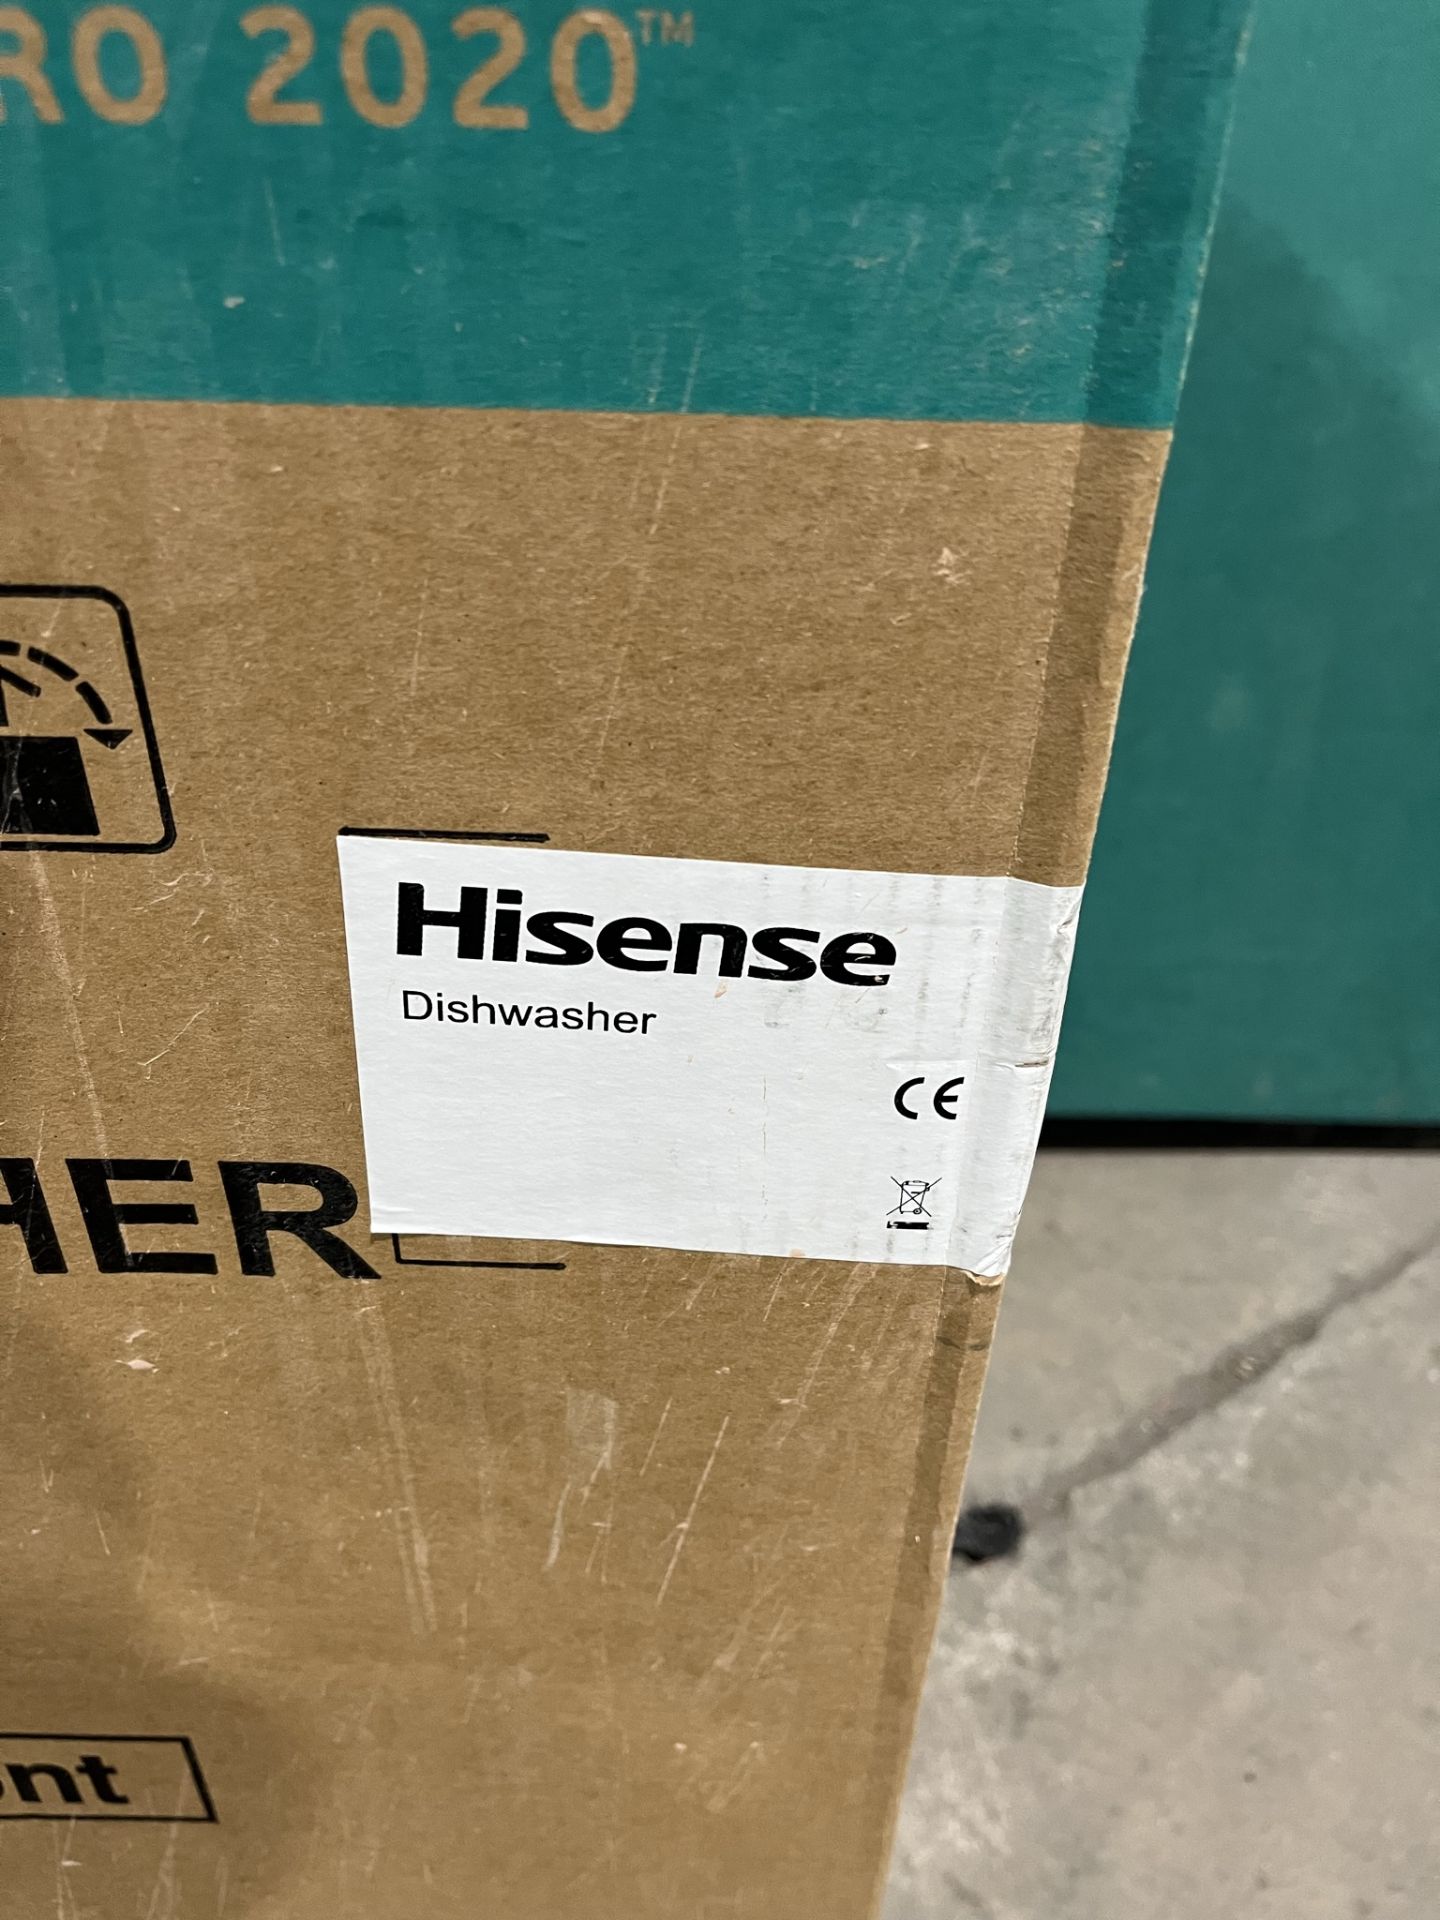 Hisense HV520E40UK Integrated Dishwasher - Image 4 of 5